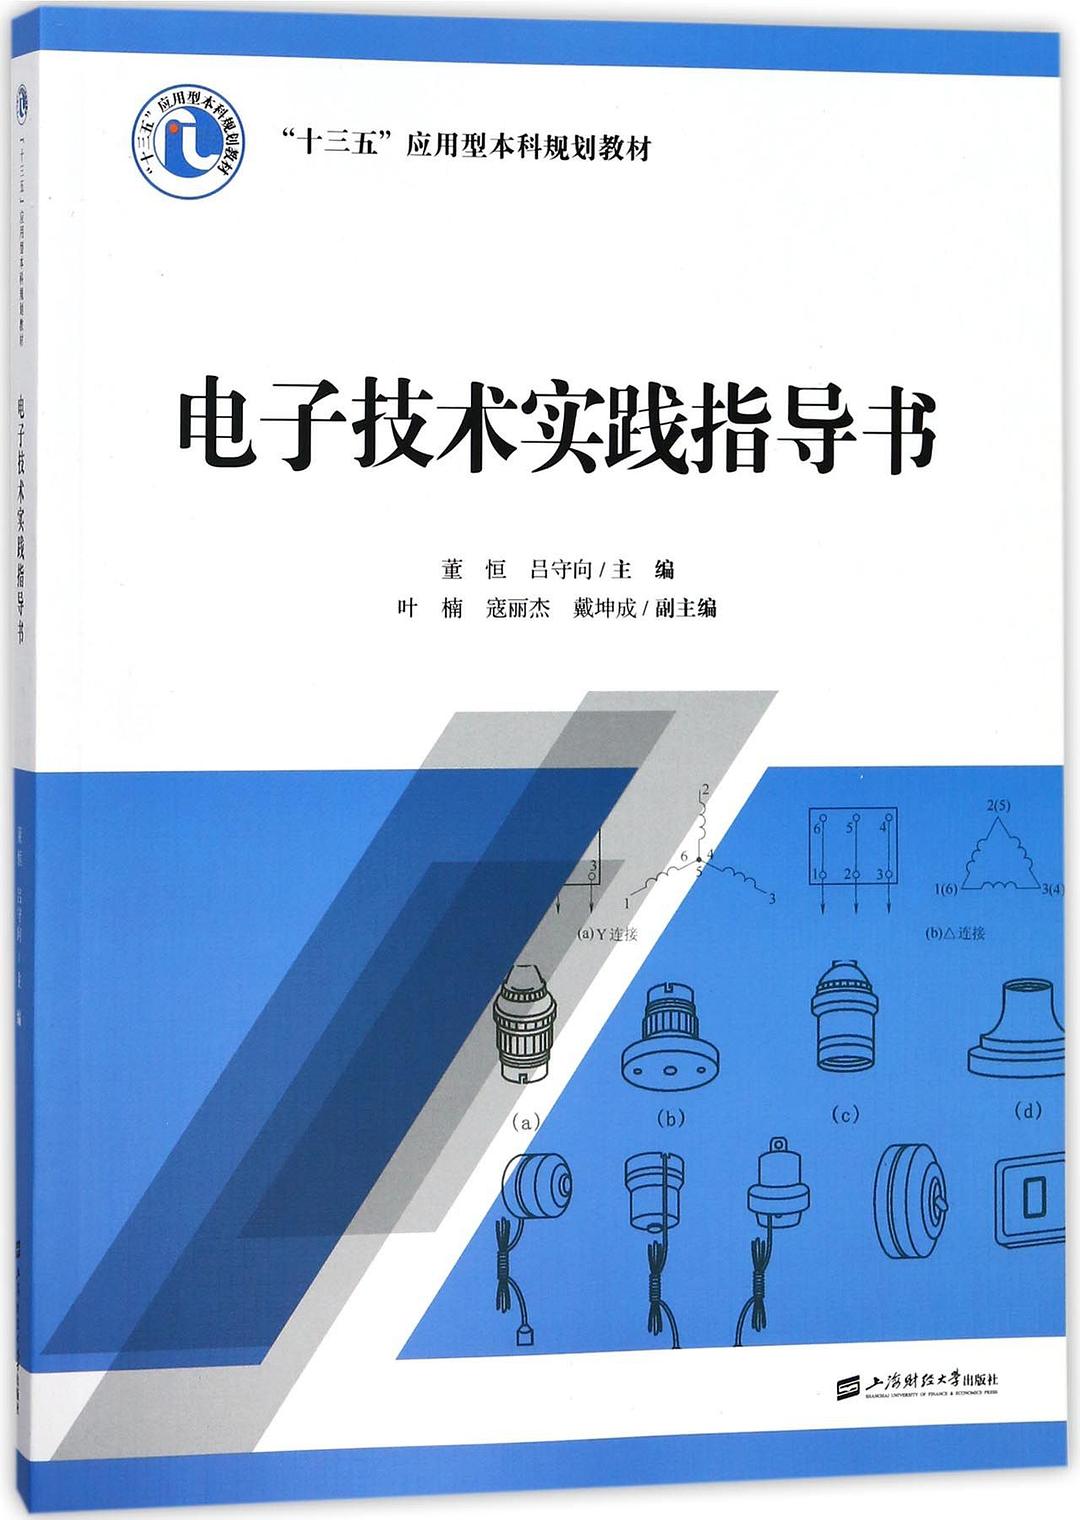 電子技術實踐指導書(上海財經大學出版社2018年出版圖書)